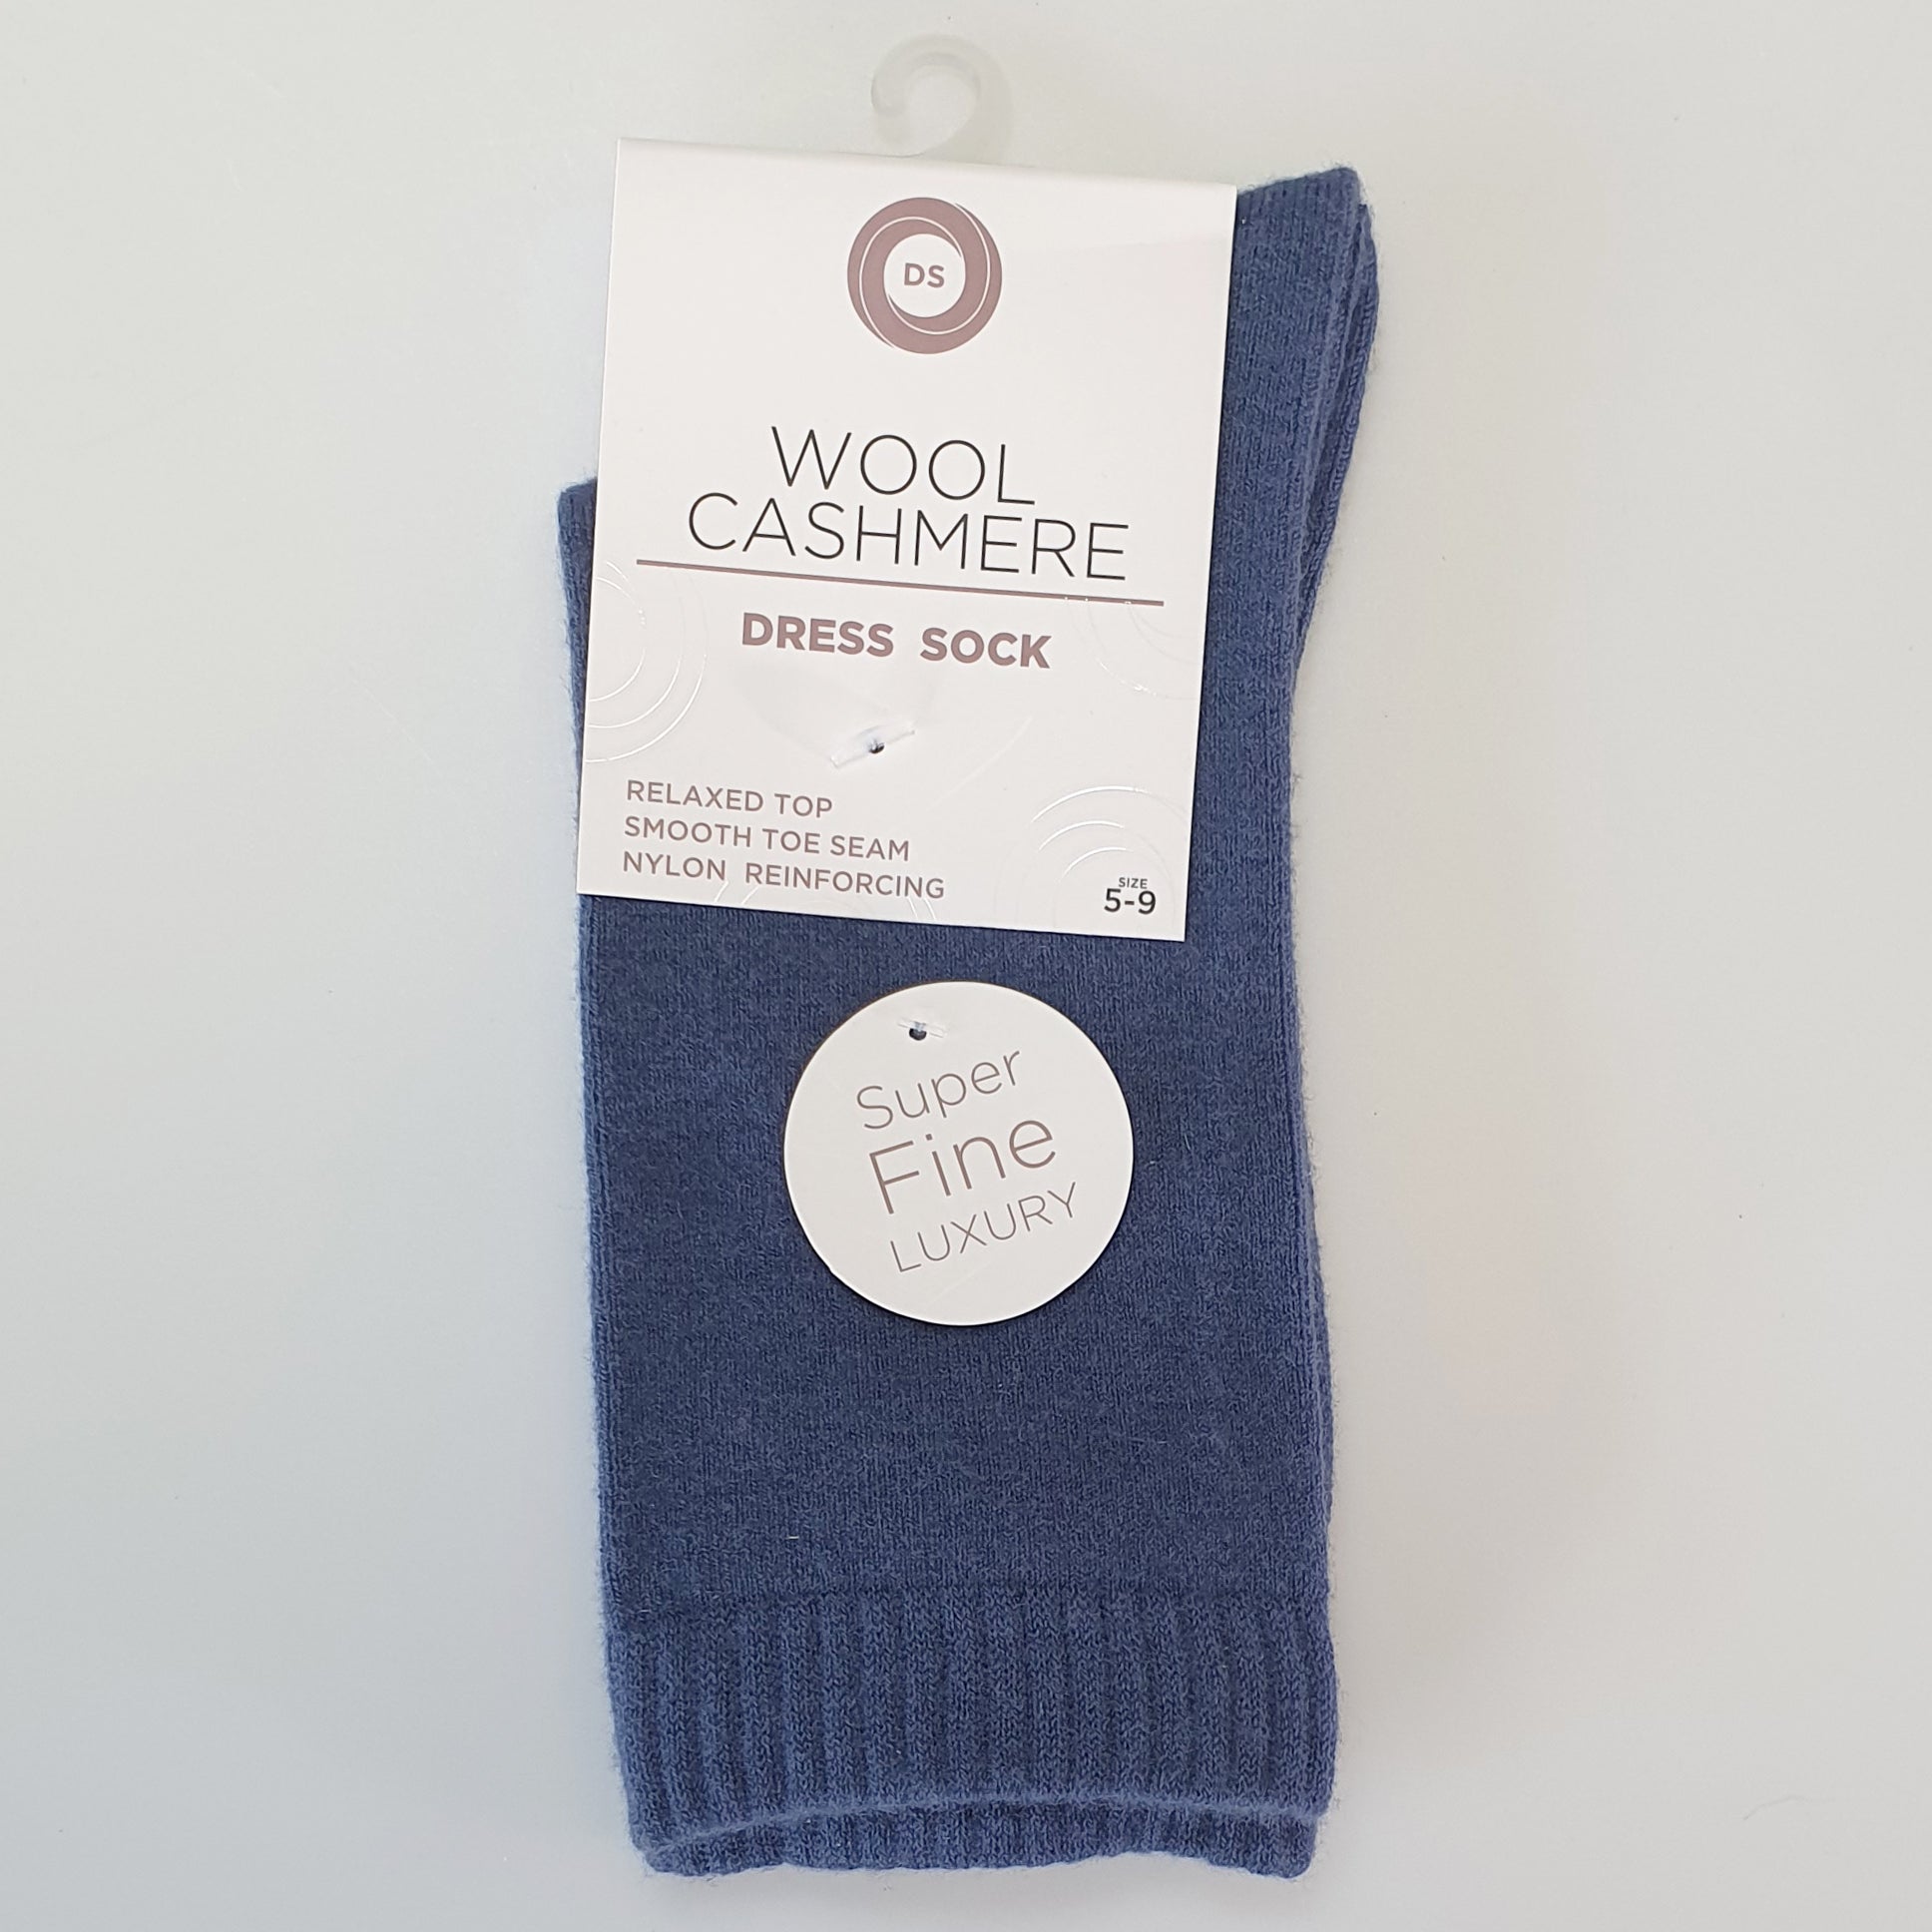 DS Wool Cashmere Dress Socks - Plain Denim